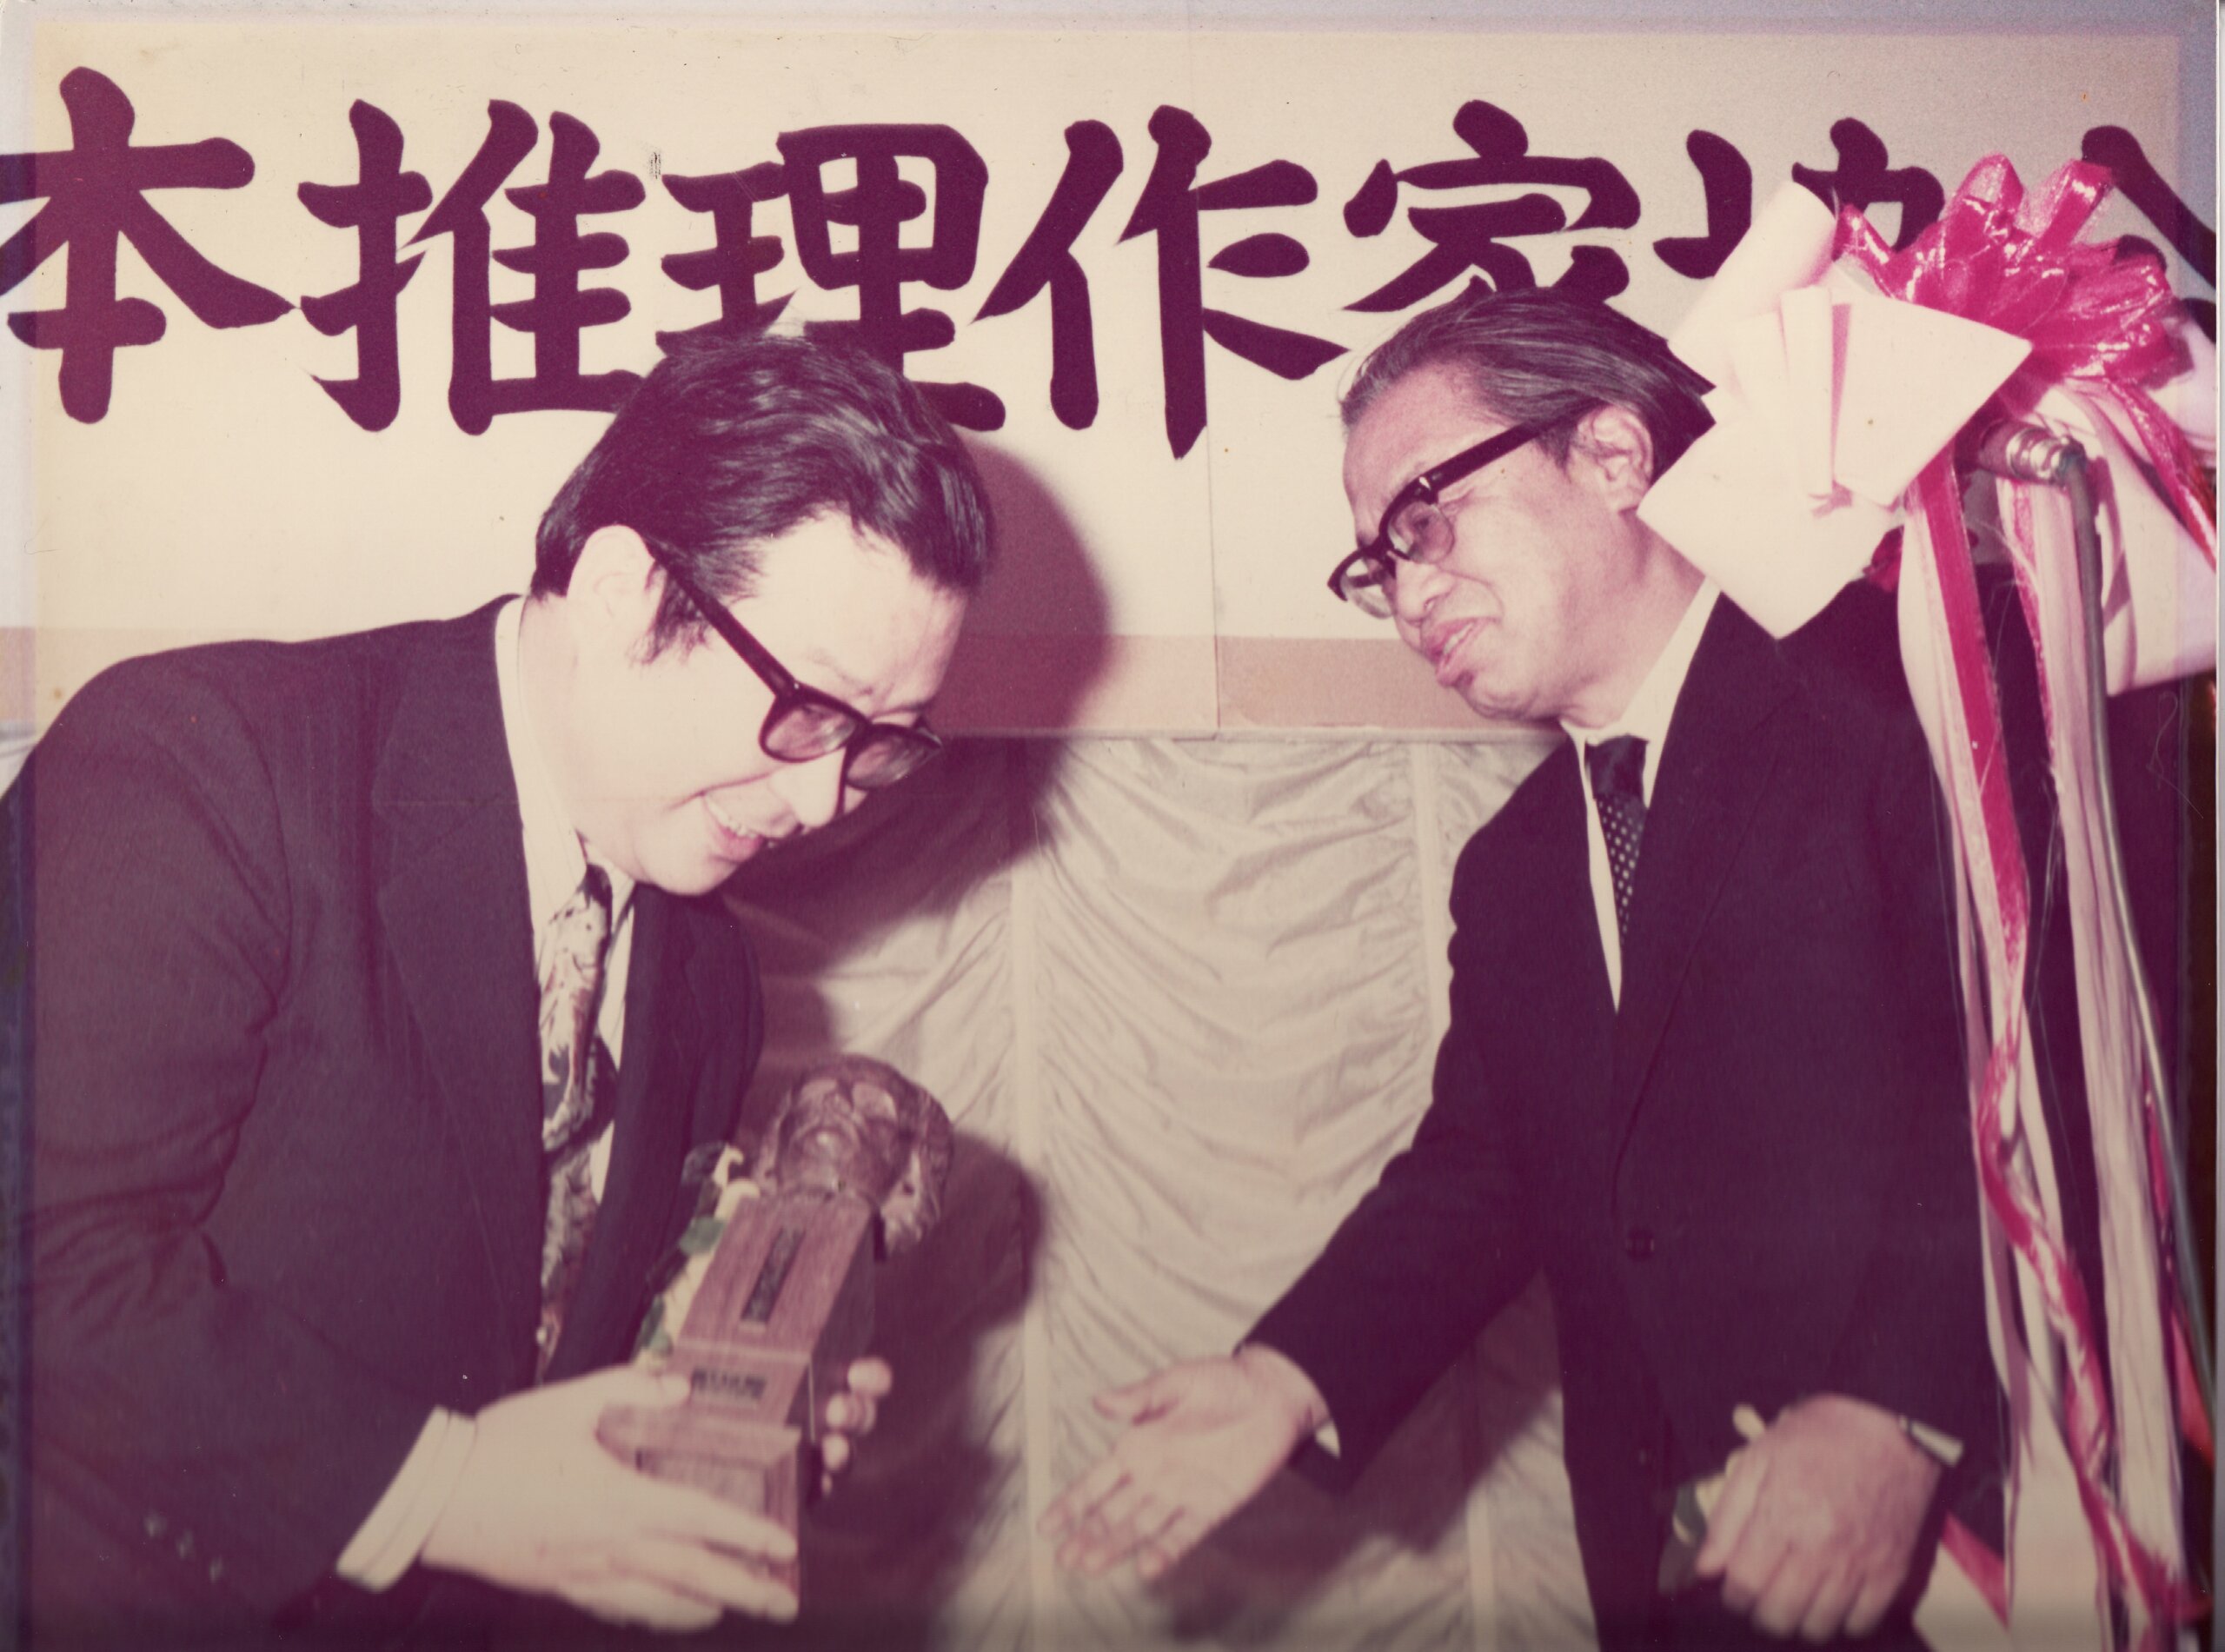 1974推理作家協会賞（(撮影者不明・プロ写真家？）